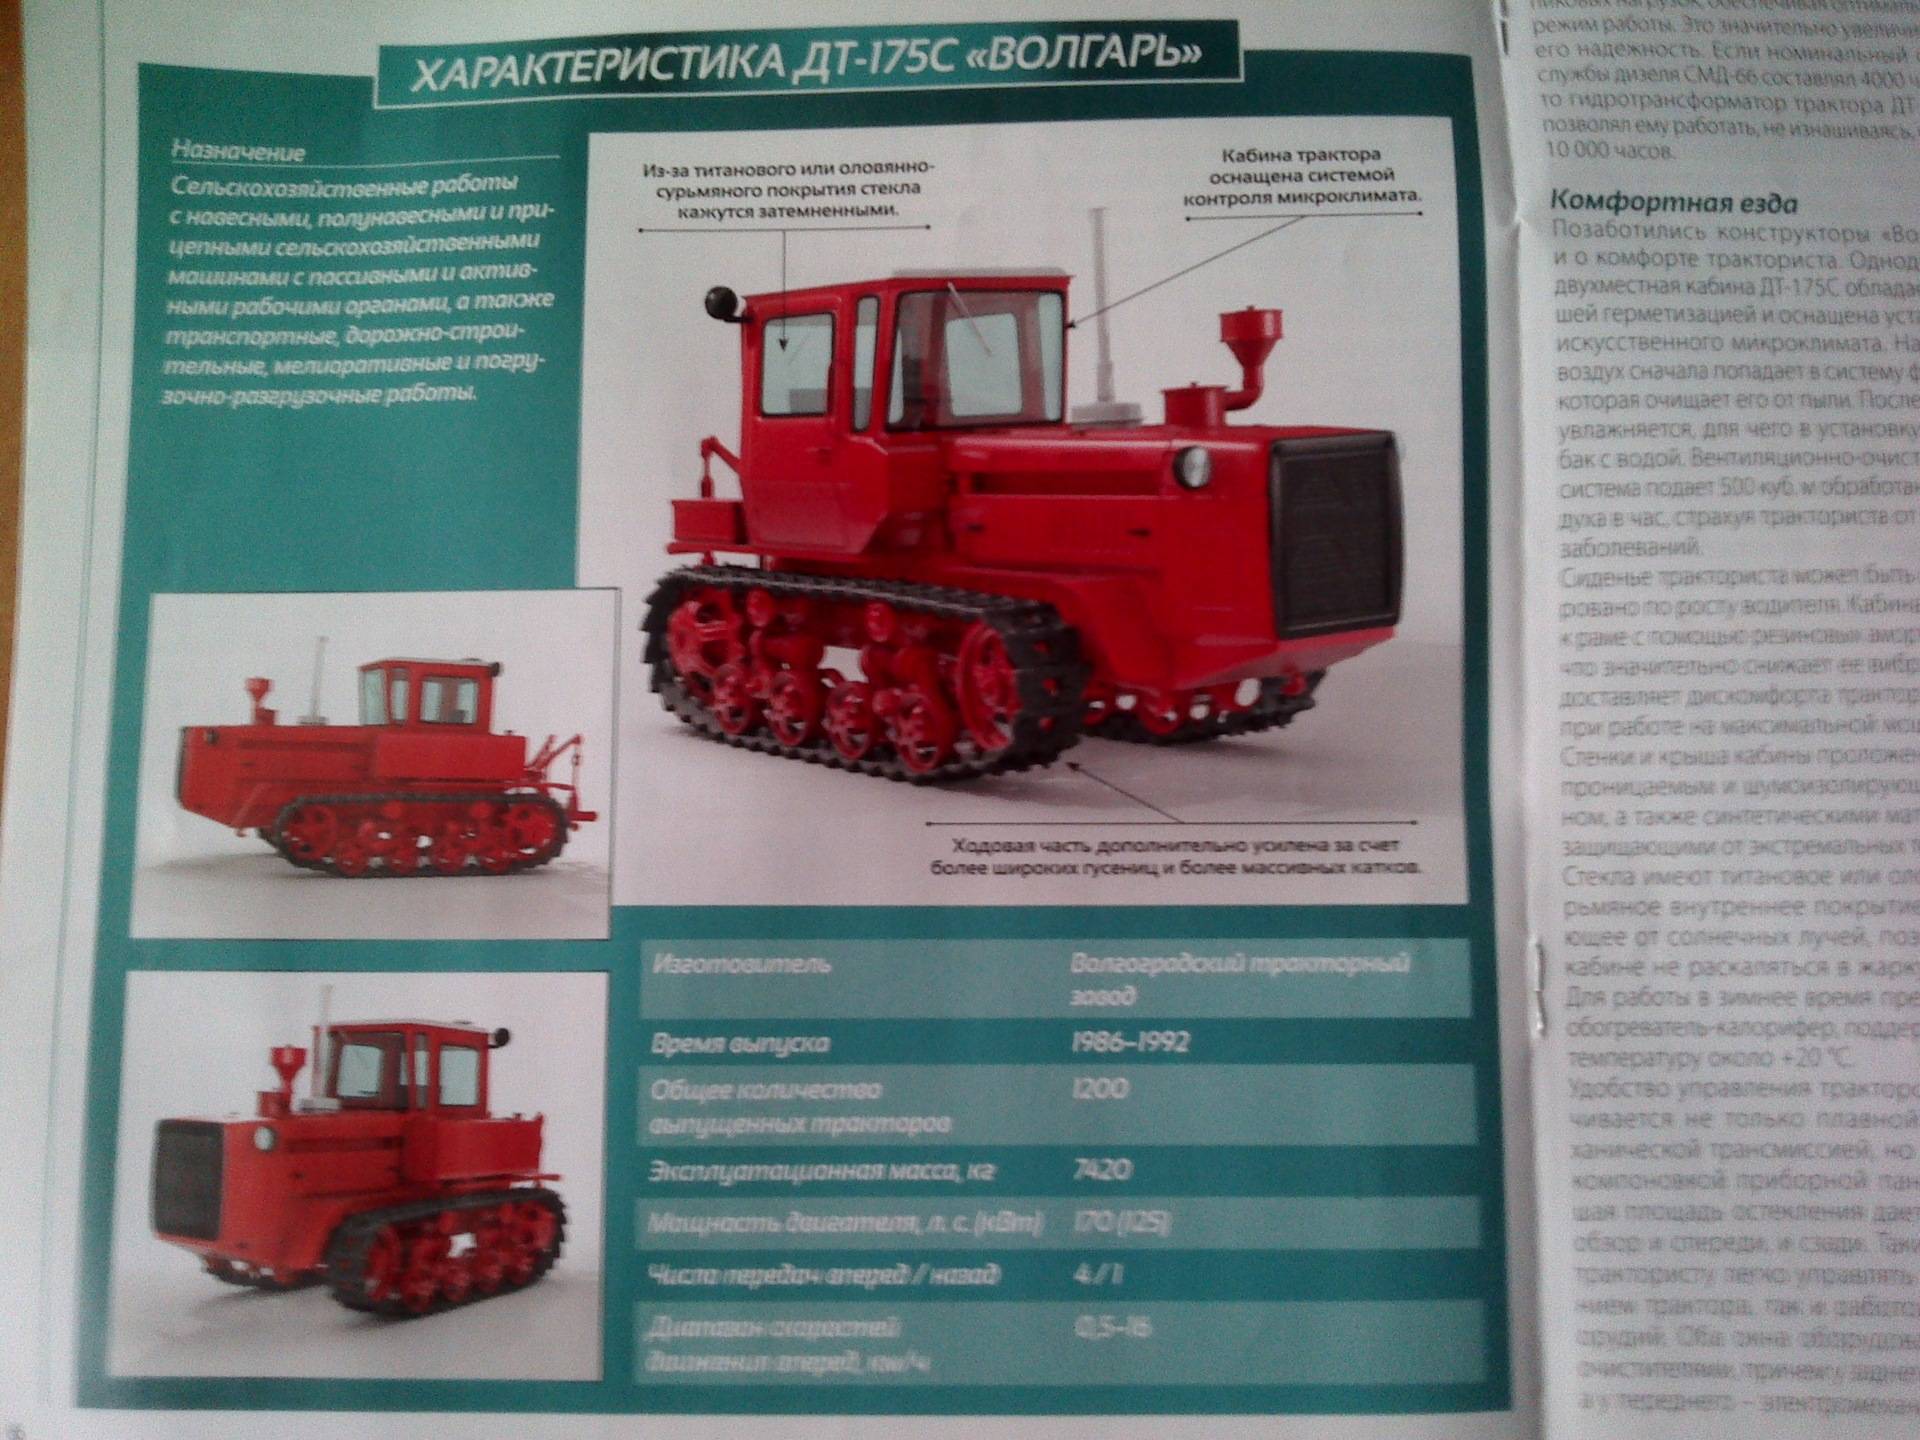 Характеристики советского дизельного гусеничного трактора ДТ-175 Волгарь